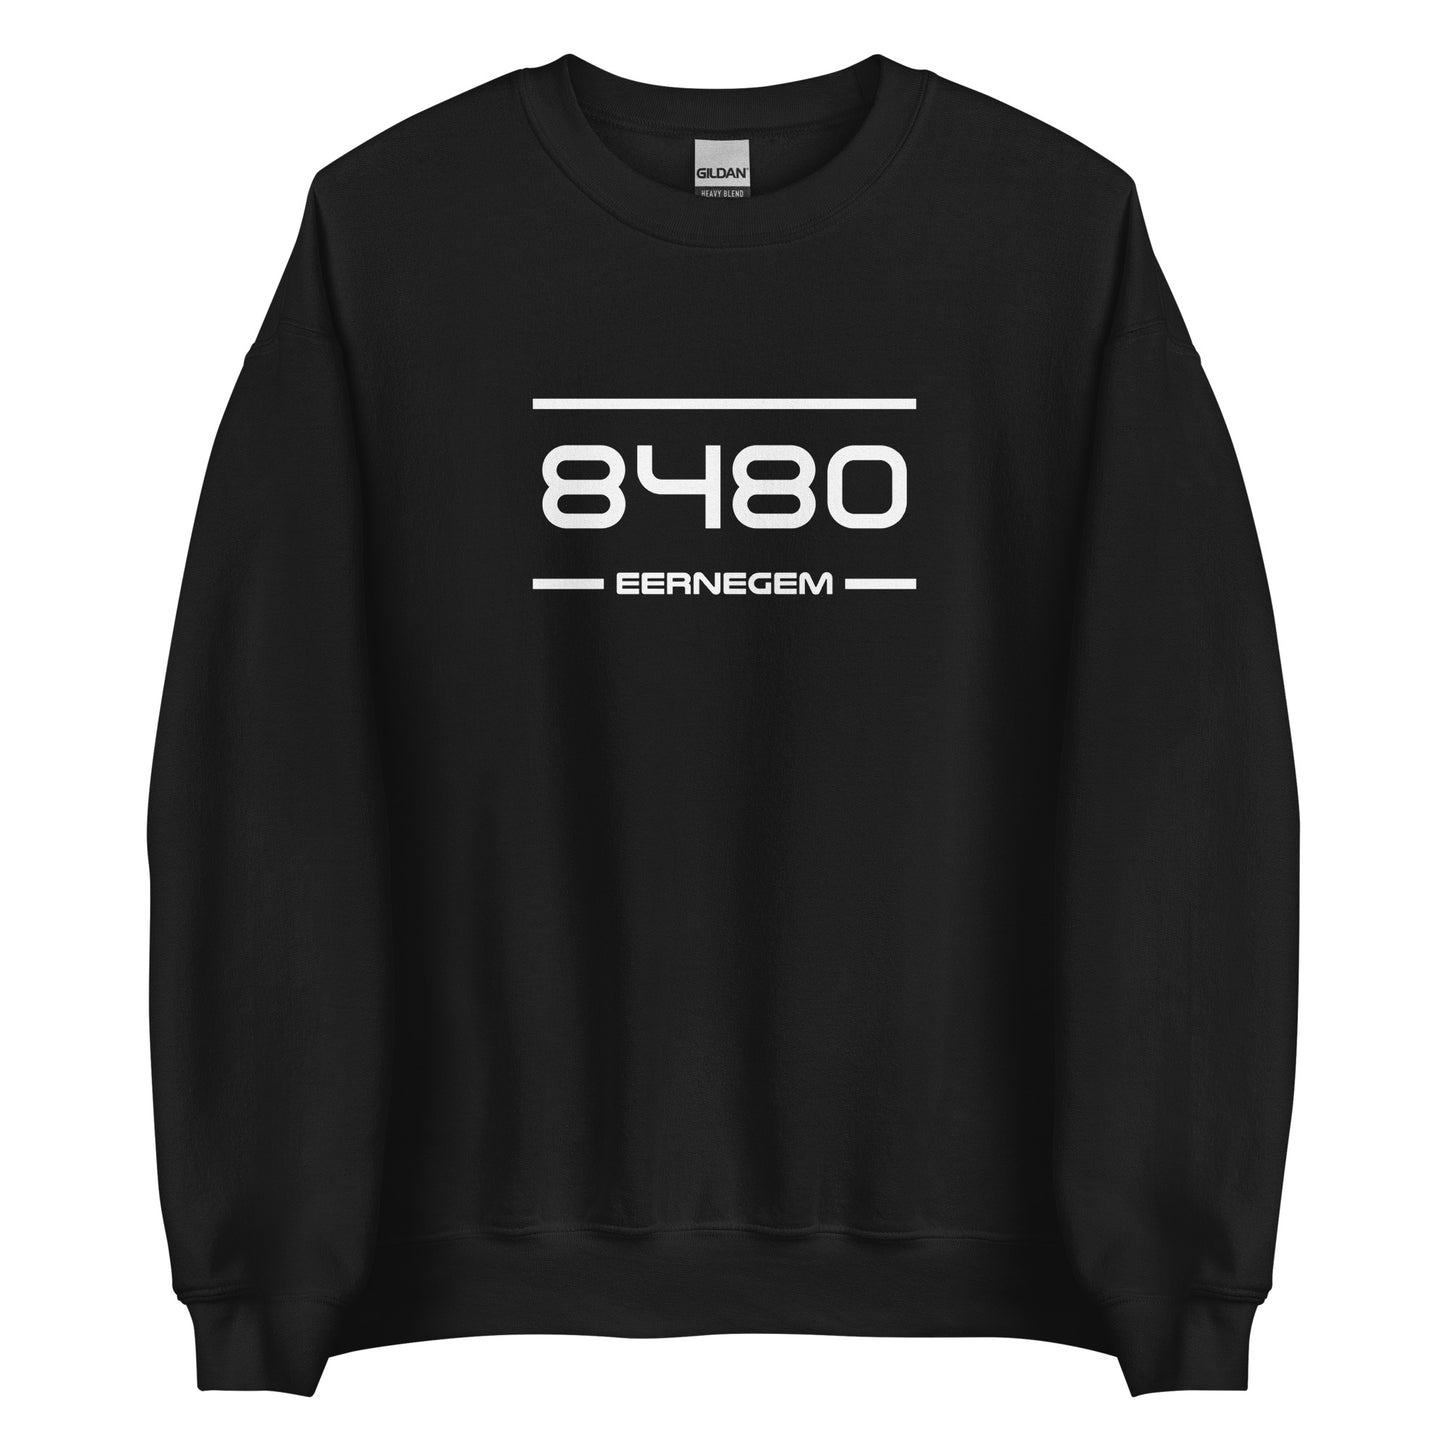 Sweater - 8480 - Eernegem (M/V)